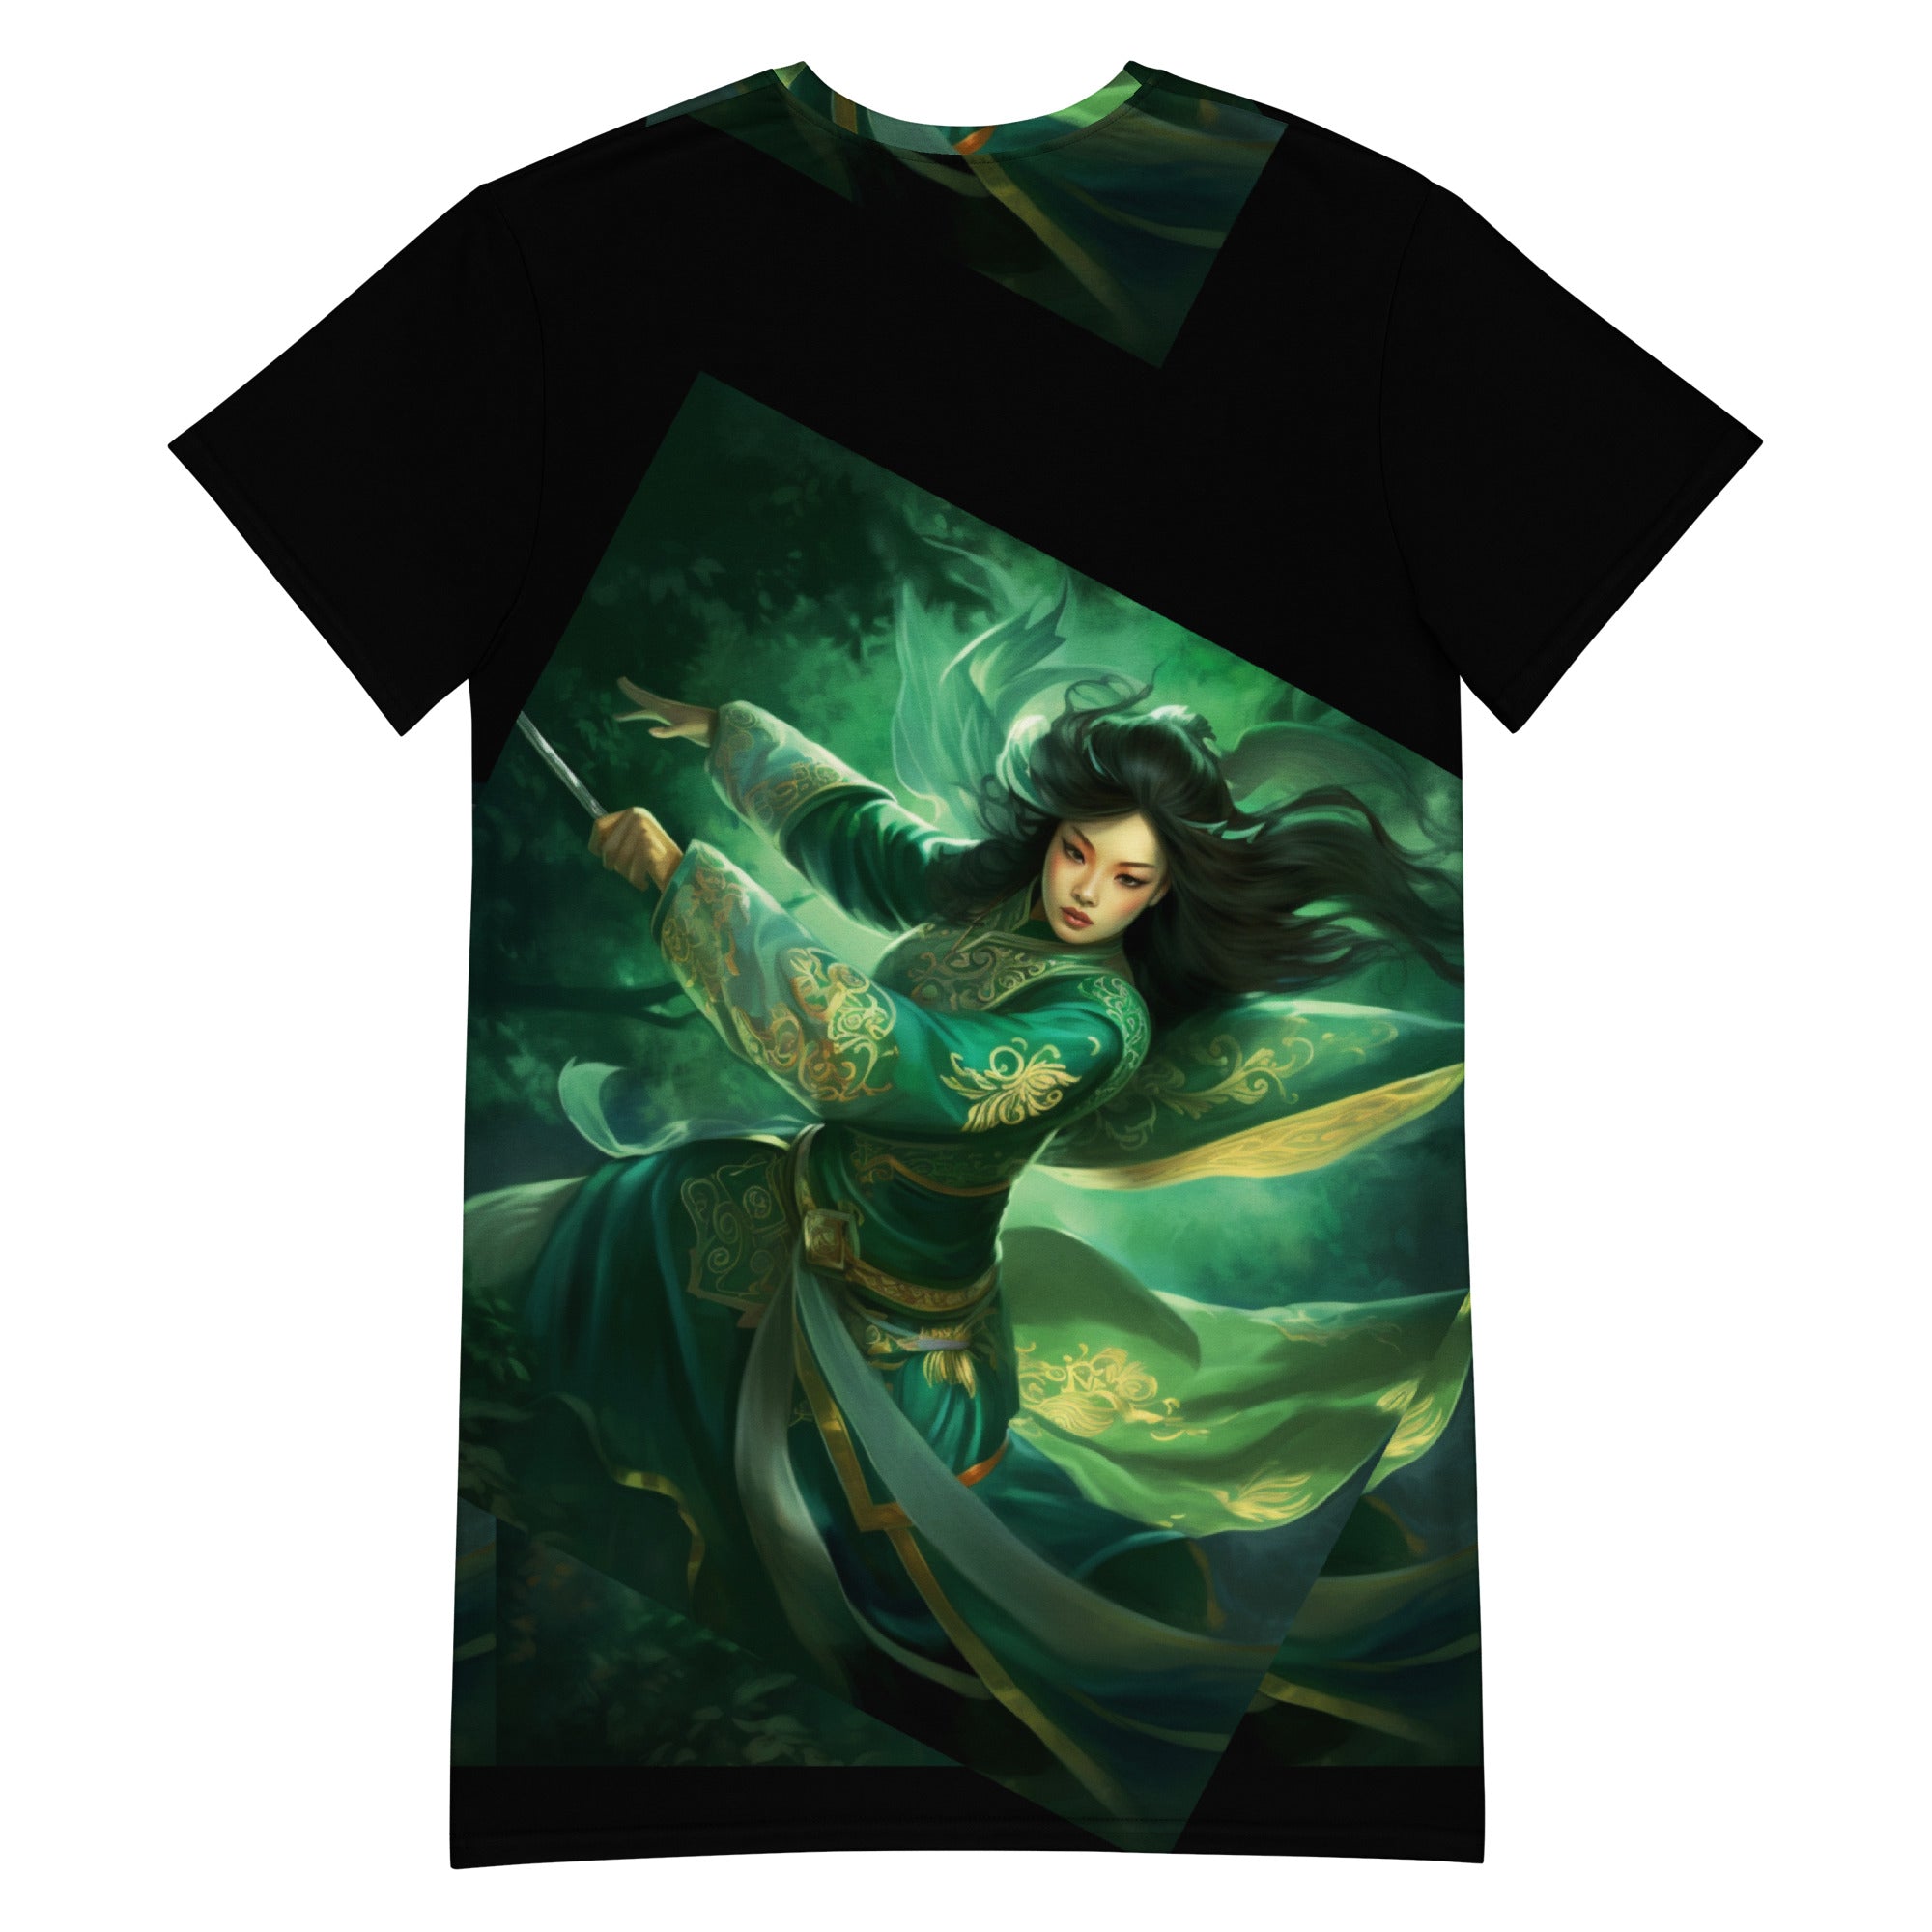 Empowered by Legends: Hua Mulan Chinese Fairy Style T-Shirt Dress | Fairy Dress | Chinese Dress | TShirt Dress | Summer Women Dress